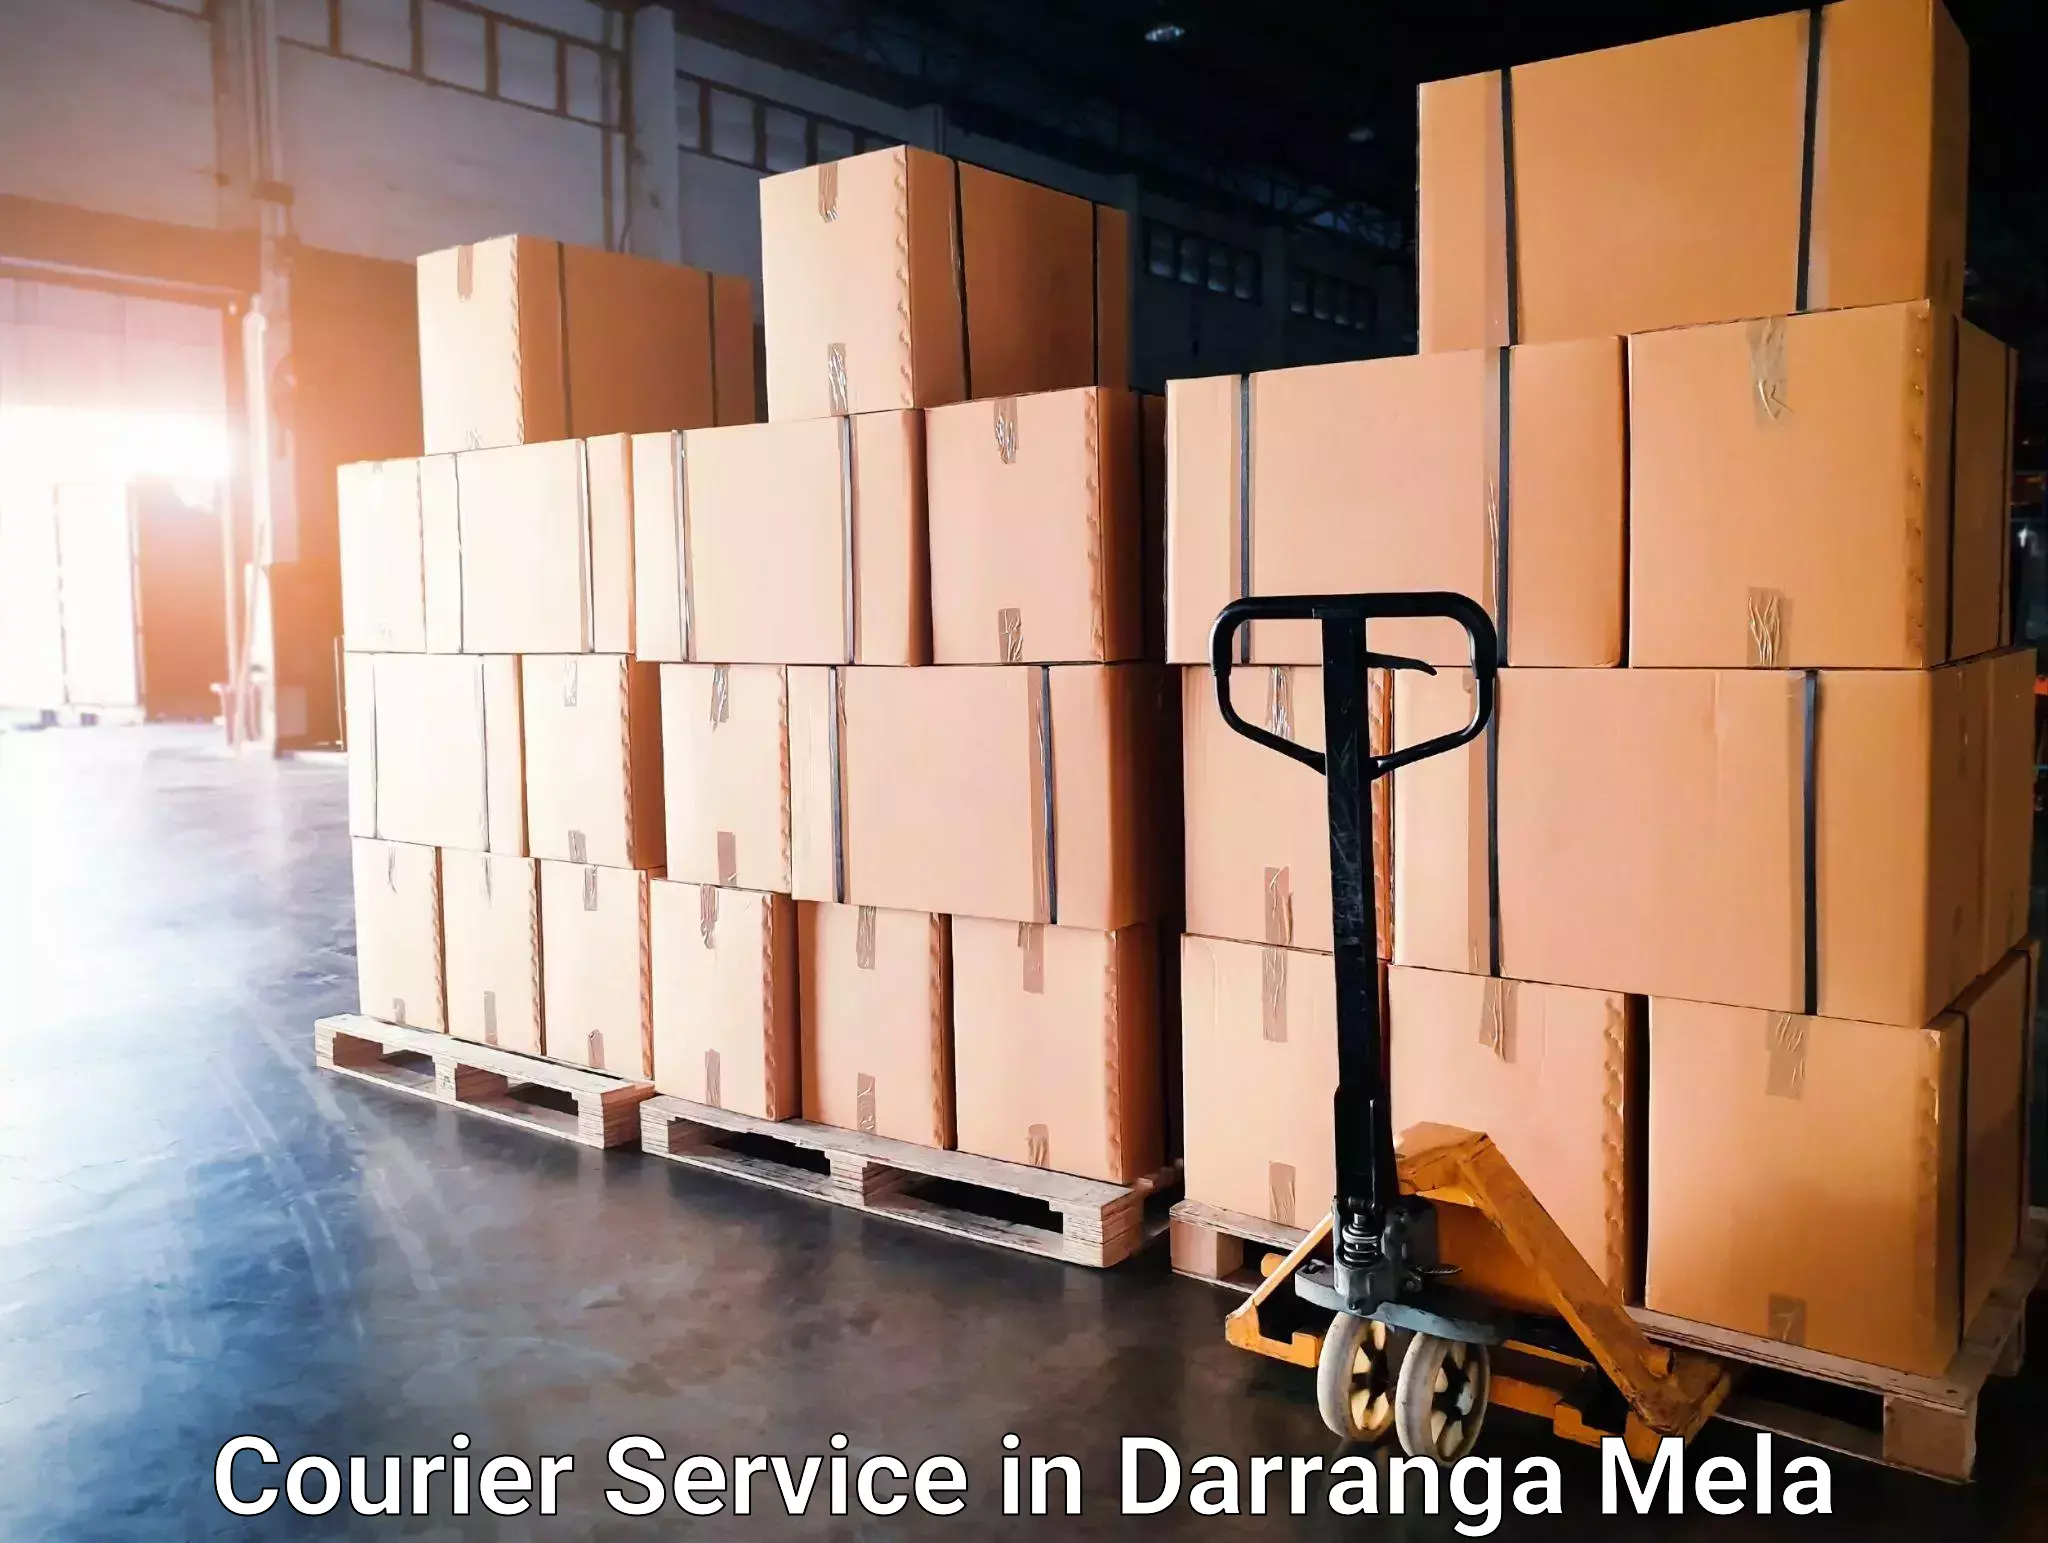 Door-to-door freight service in Darranga Mela